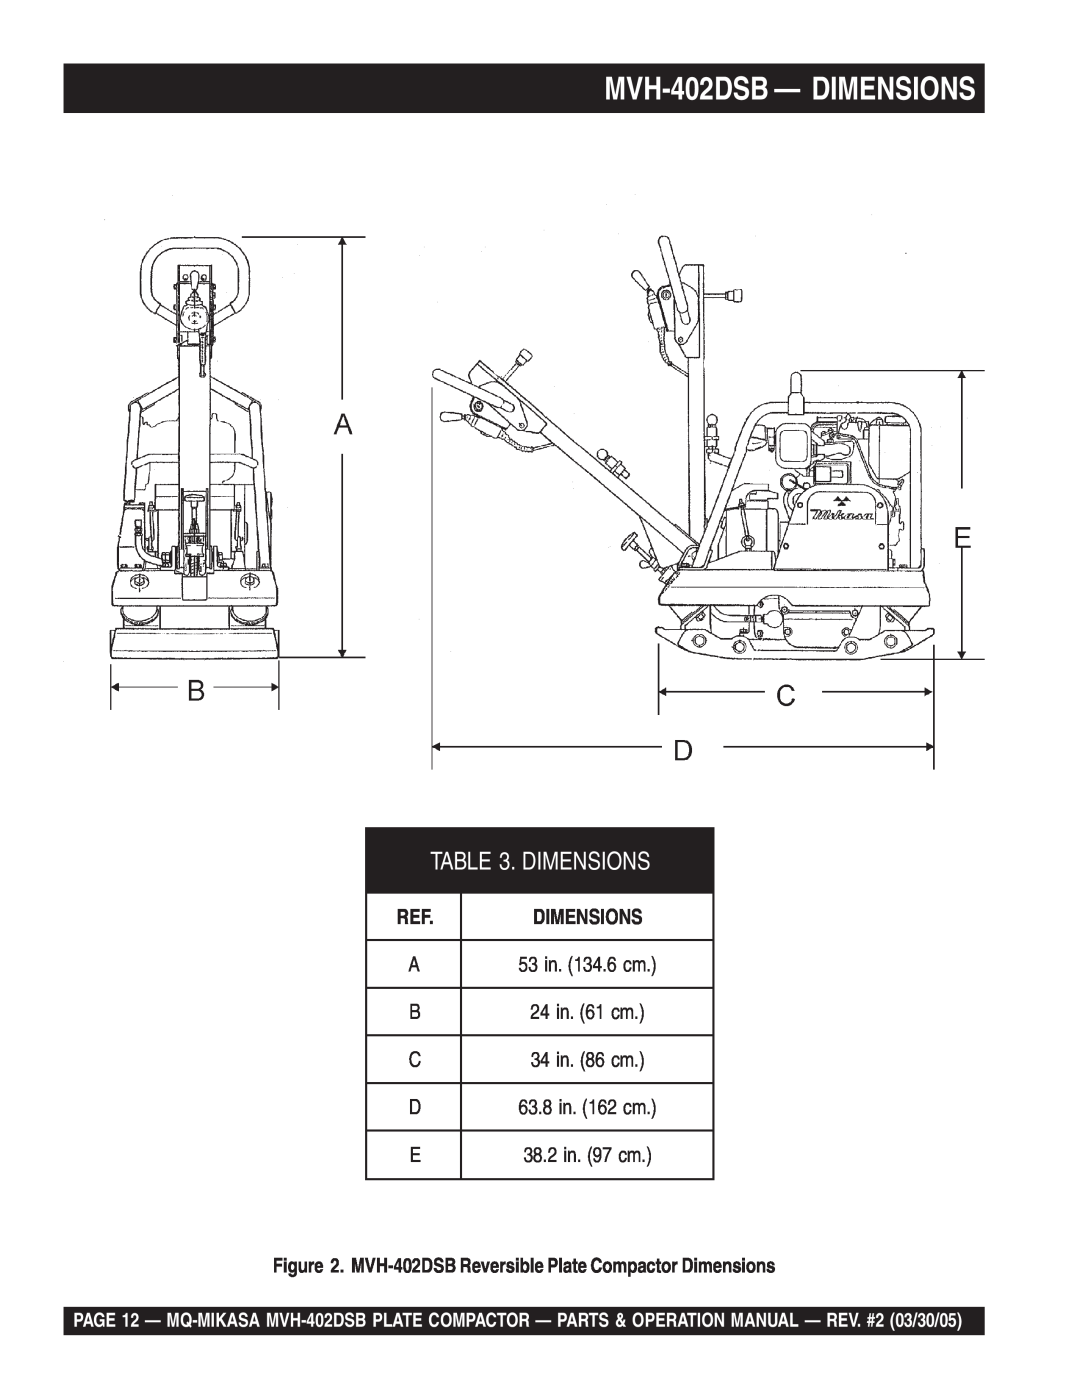 Multiquip manual MVH-402DSB- DIMENSIONS, Dimensions 